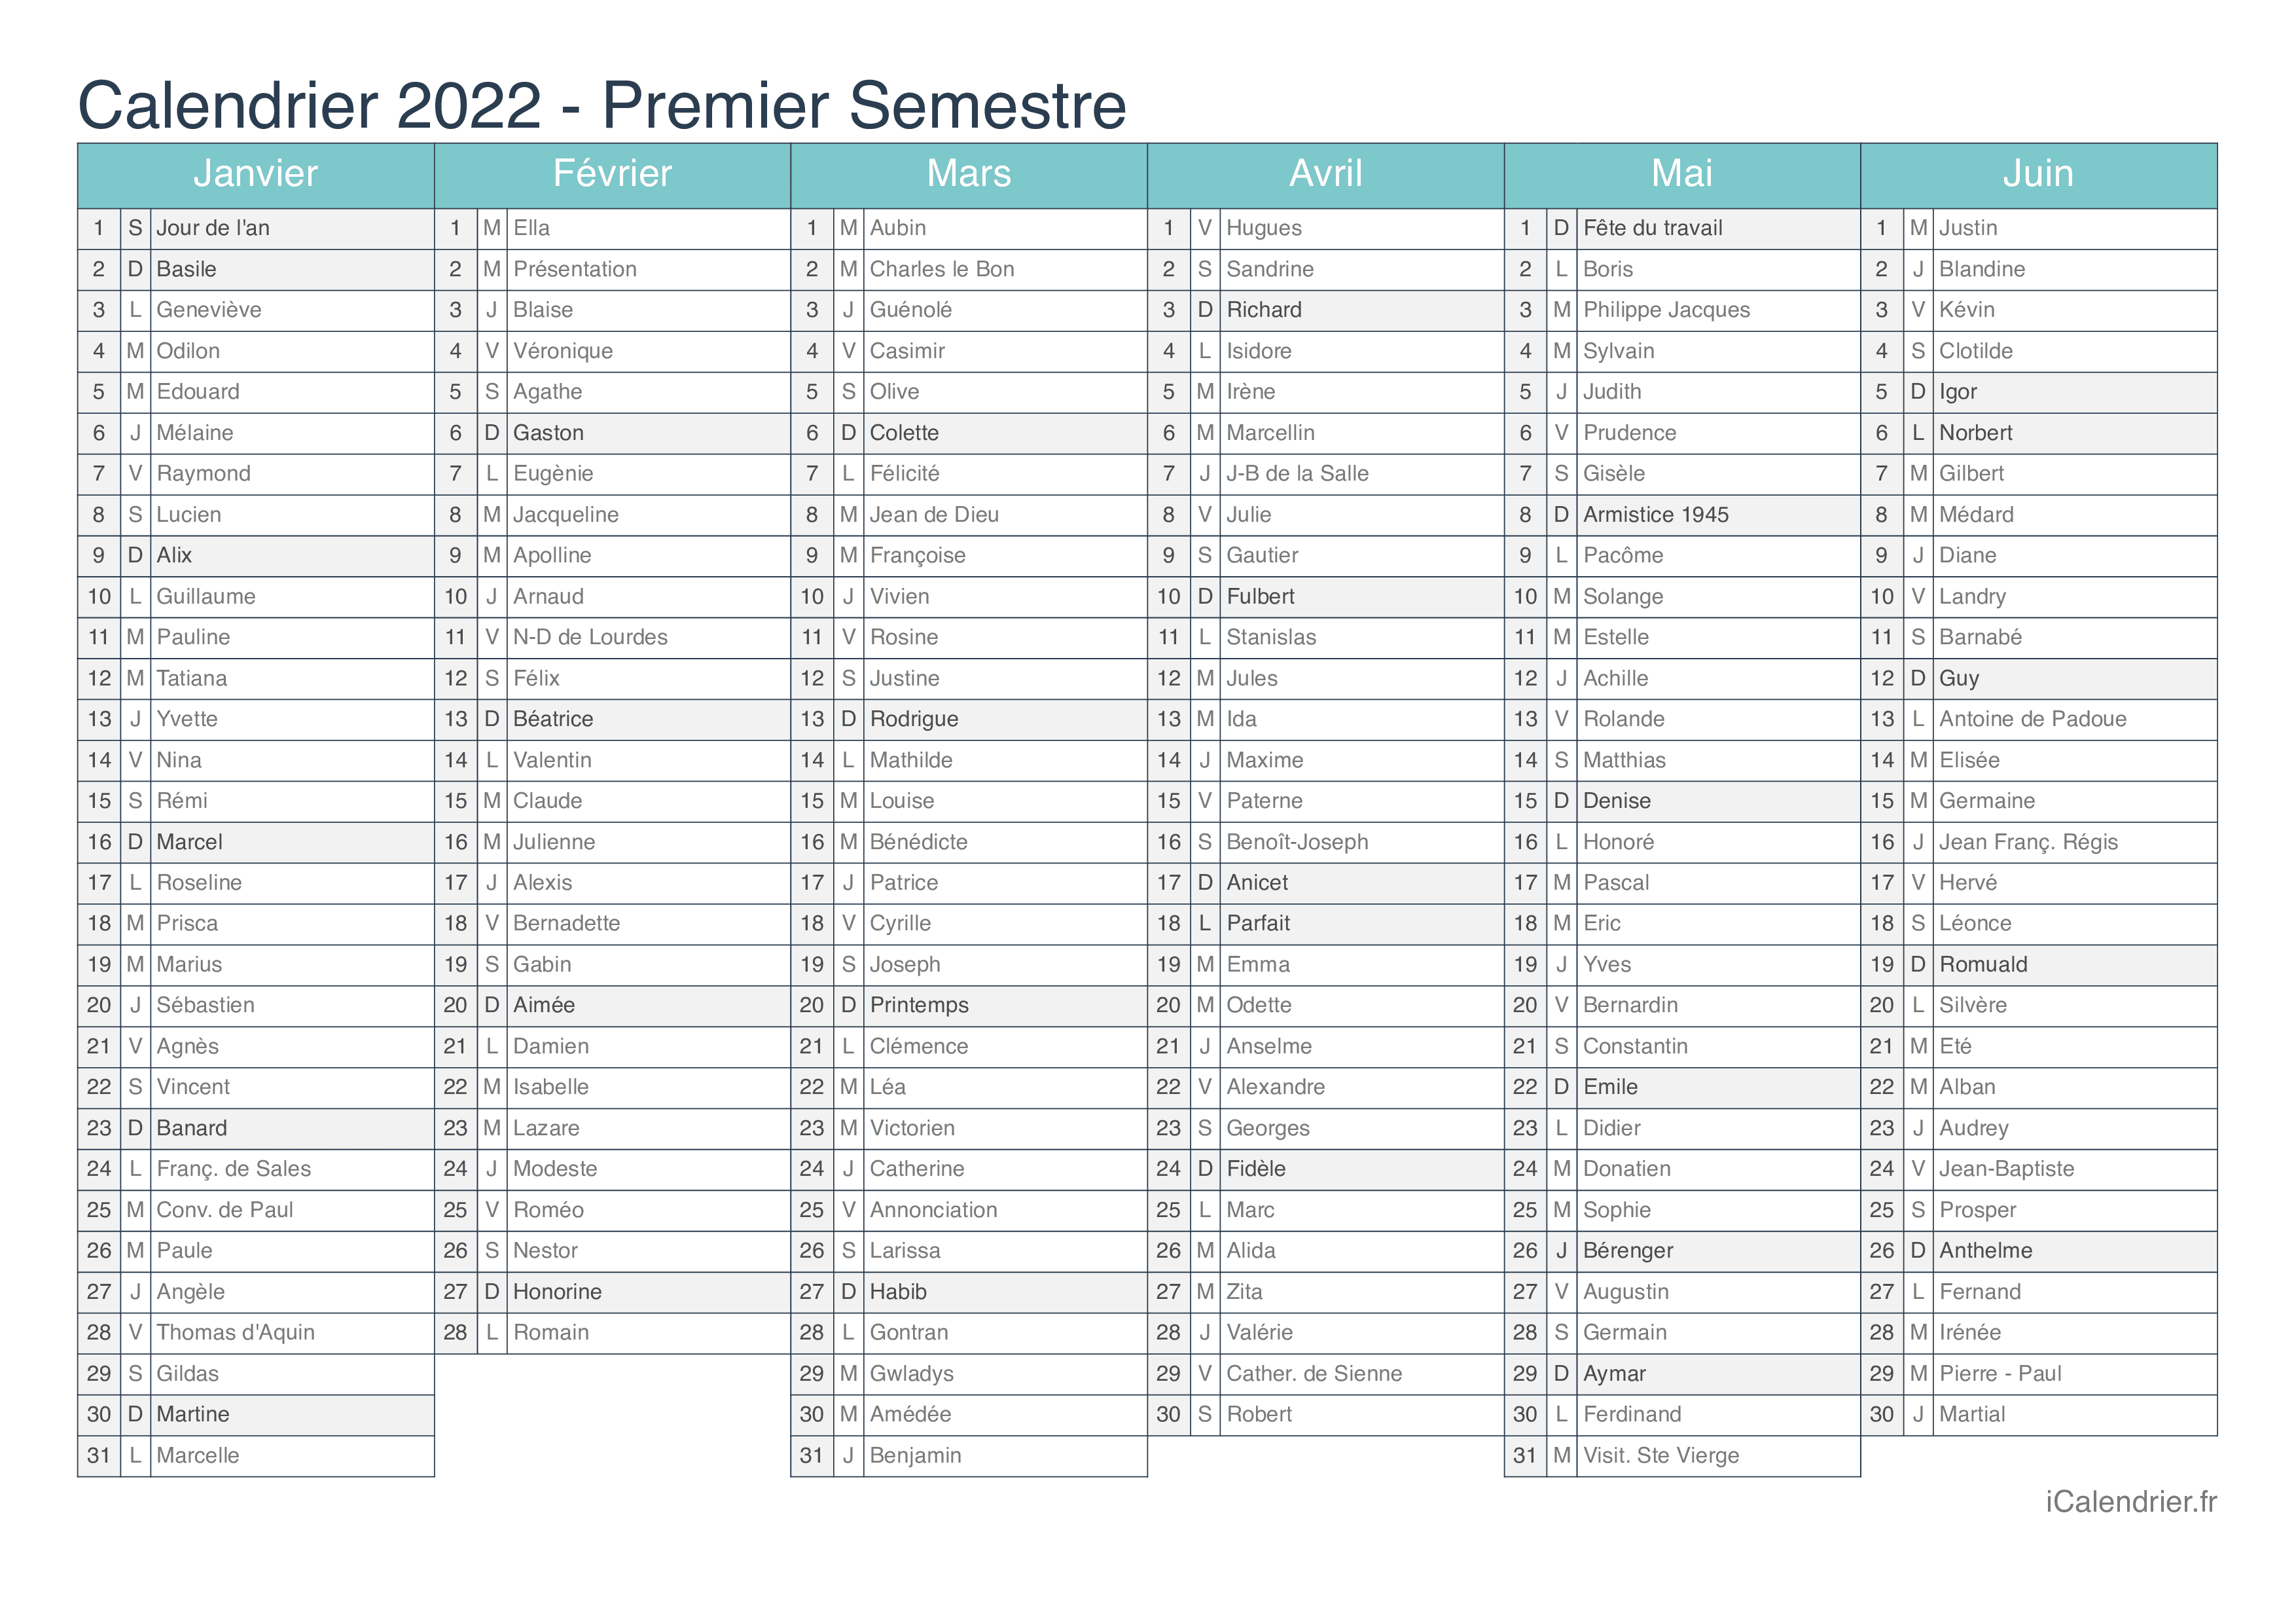 Calendrier 2022 Fetes Calendrier 2022 à imprimer PDF et Excel   iCalendrier